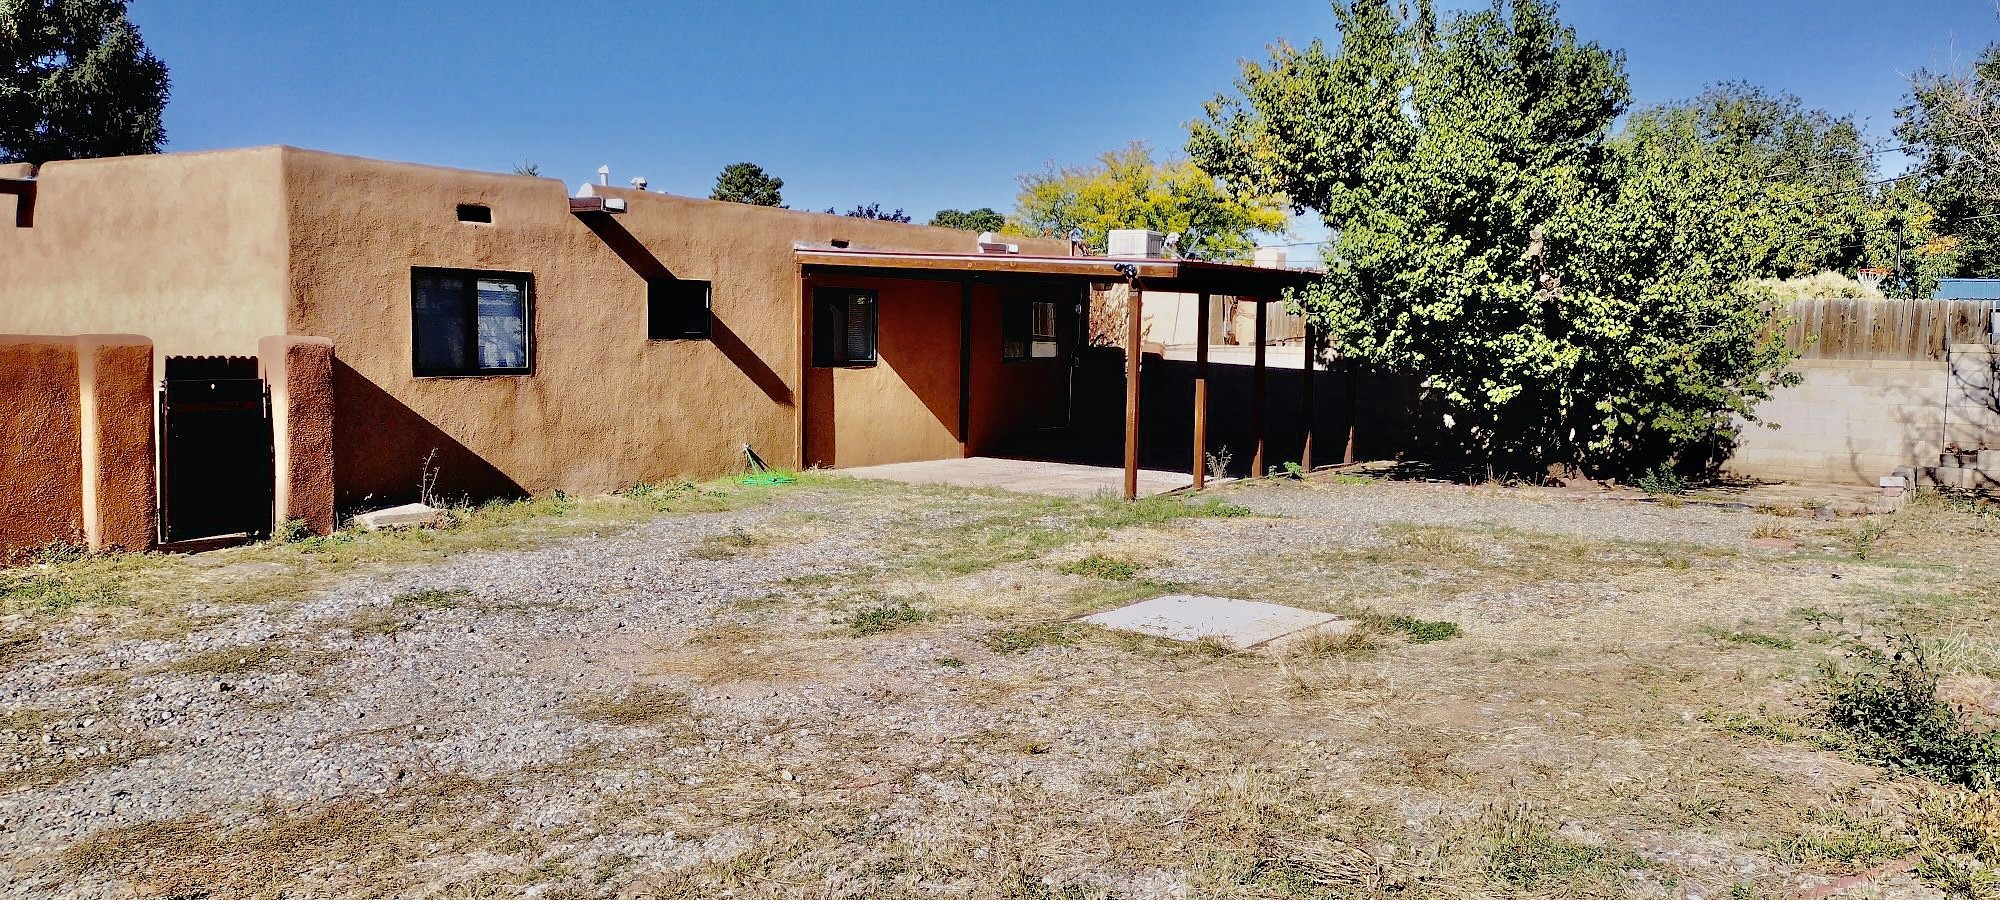 1701 Callejon Zenaida, Santa Fe, New Mexico 87501, 3 Bedrooms Bedrooms, ,1 BathroomBathrooms,Residential,For Sale,1701 Callejon Zenaida,202341389